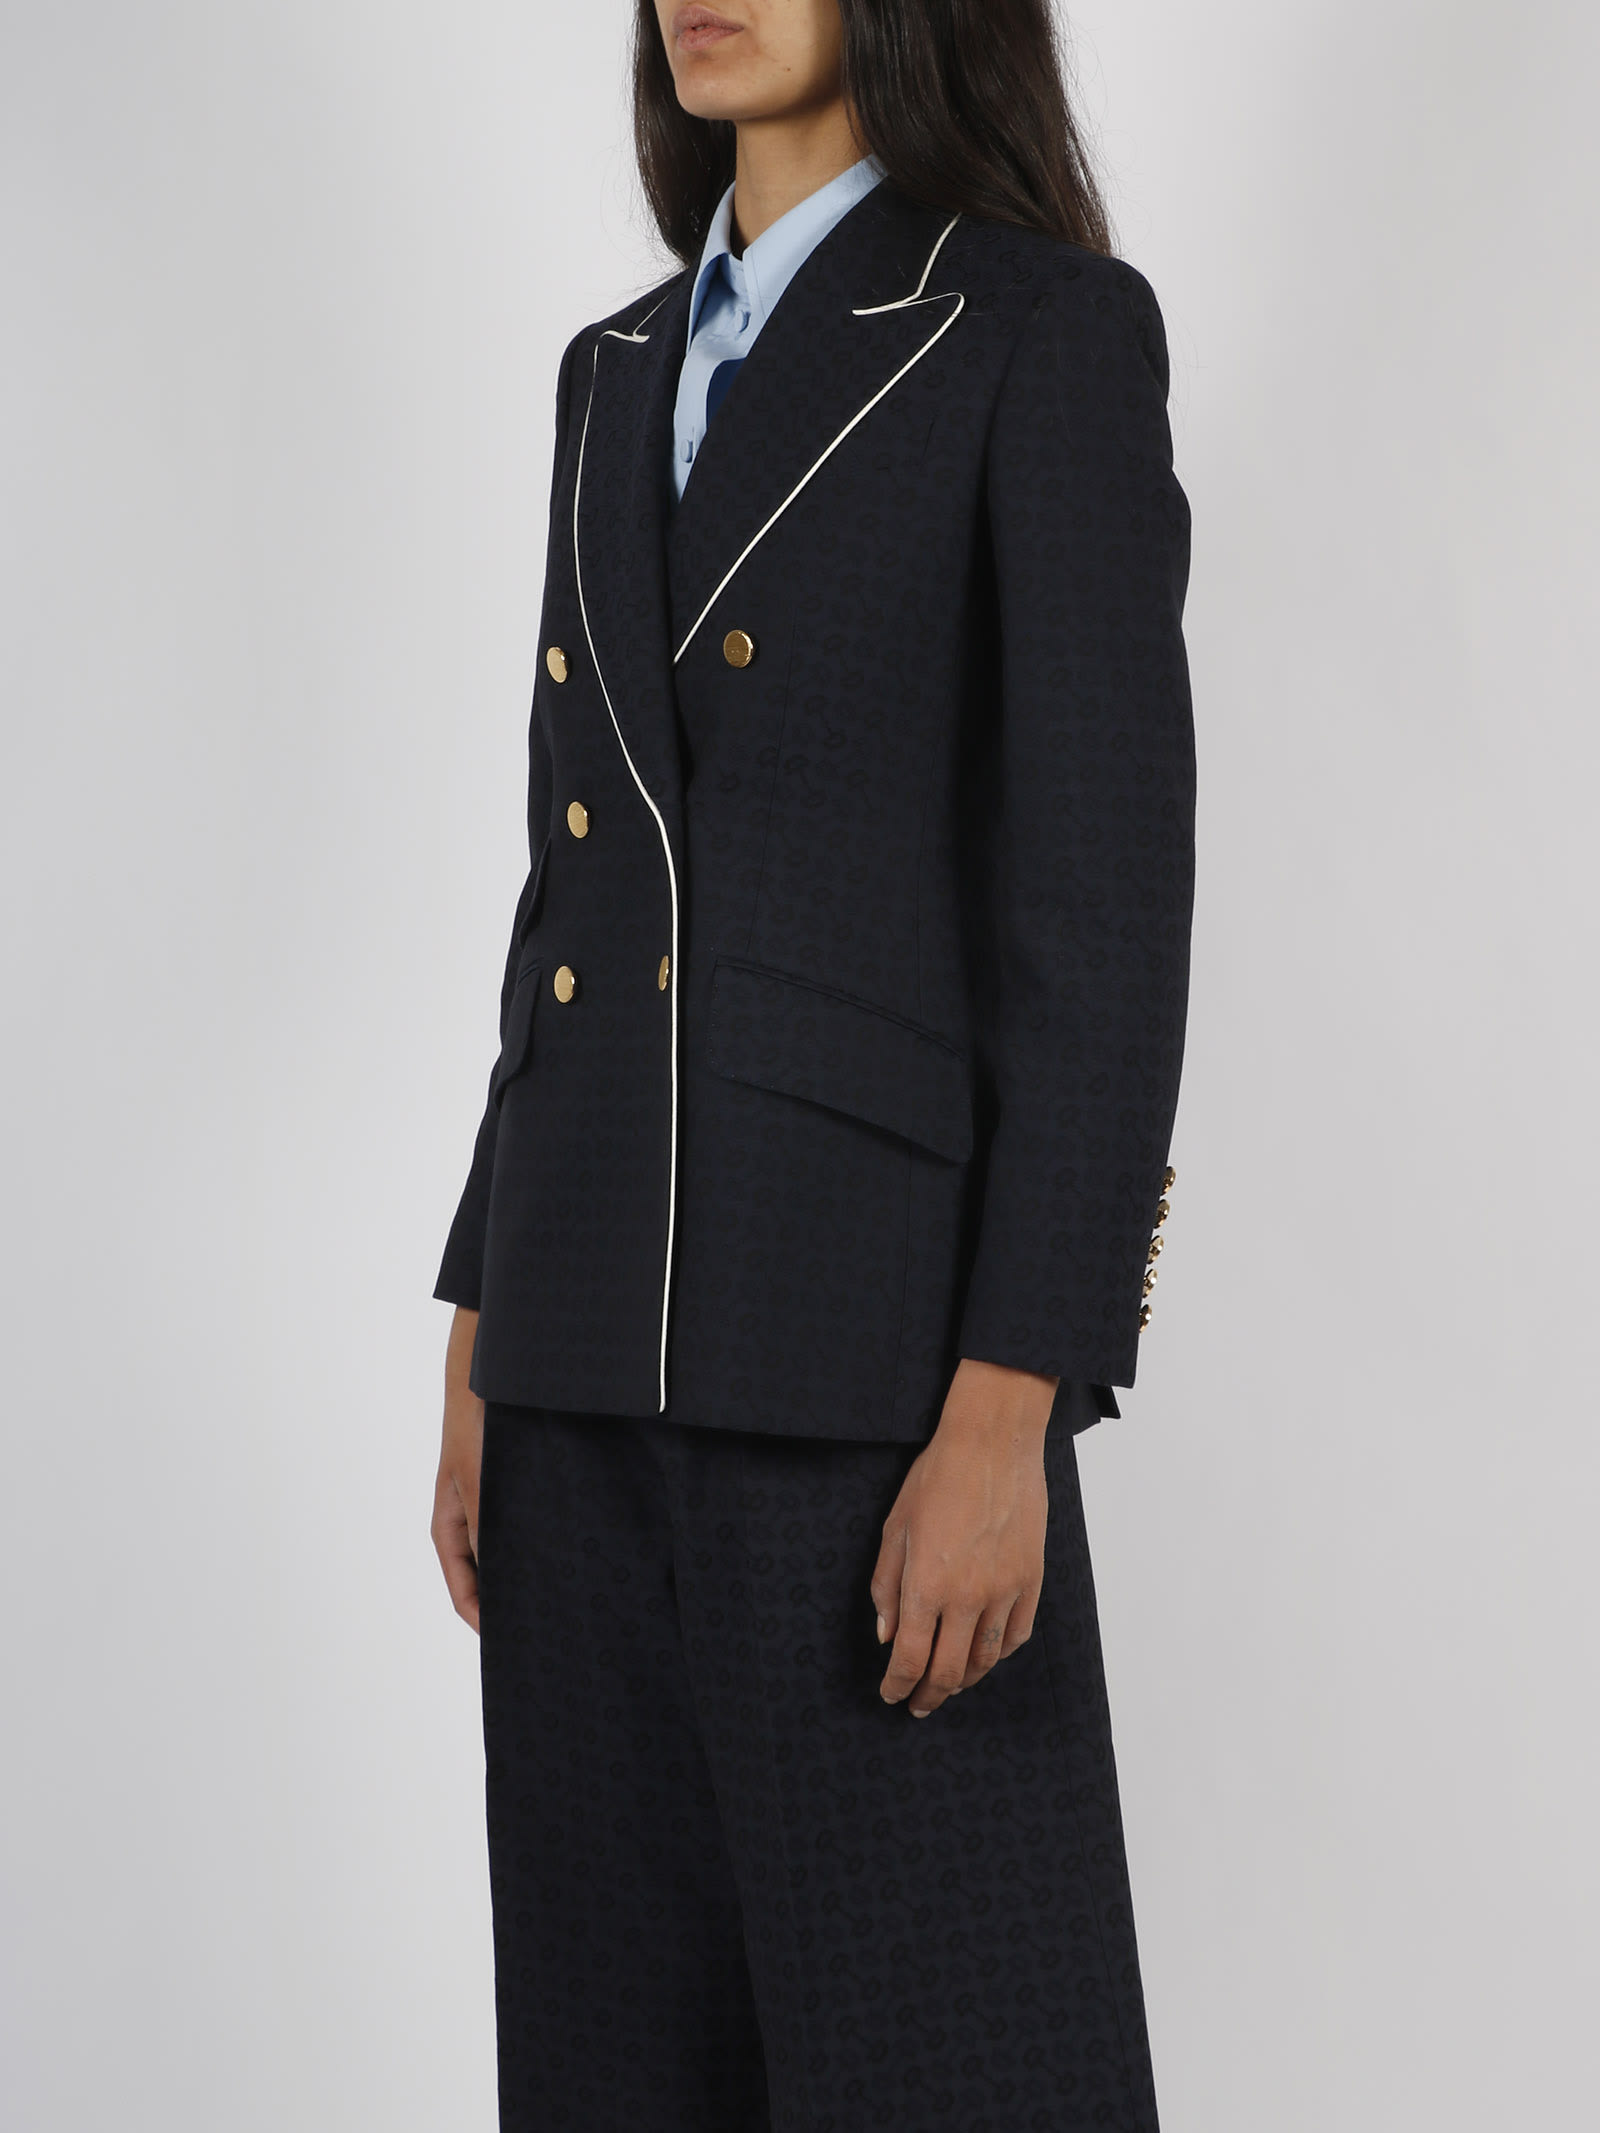 Navy Horsebit-jacquard cotton-blend suit jacket, Gucci